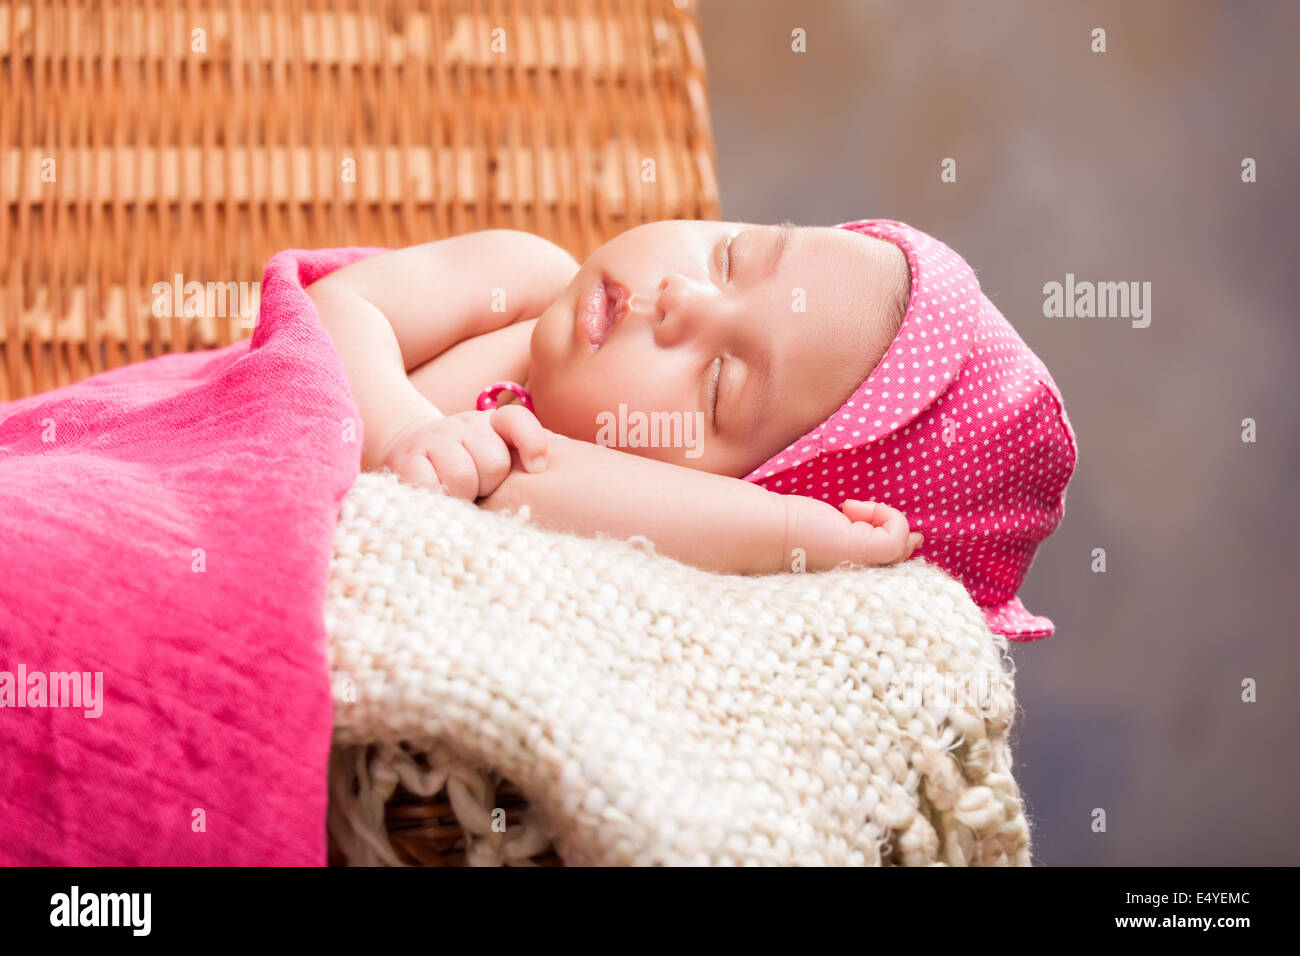 Beautiful newborn baby girl Stock Photo